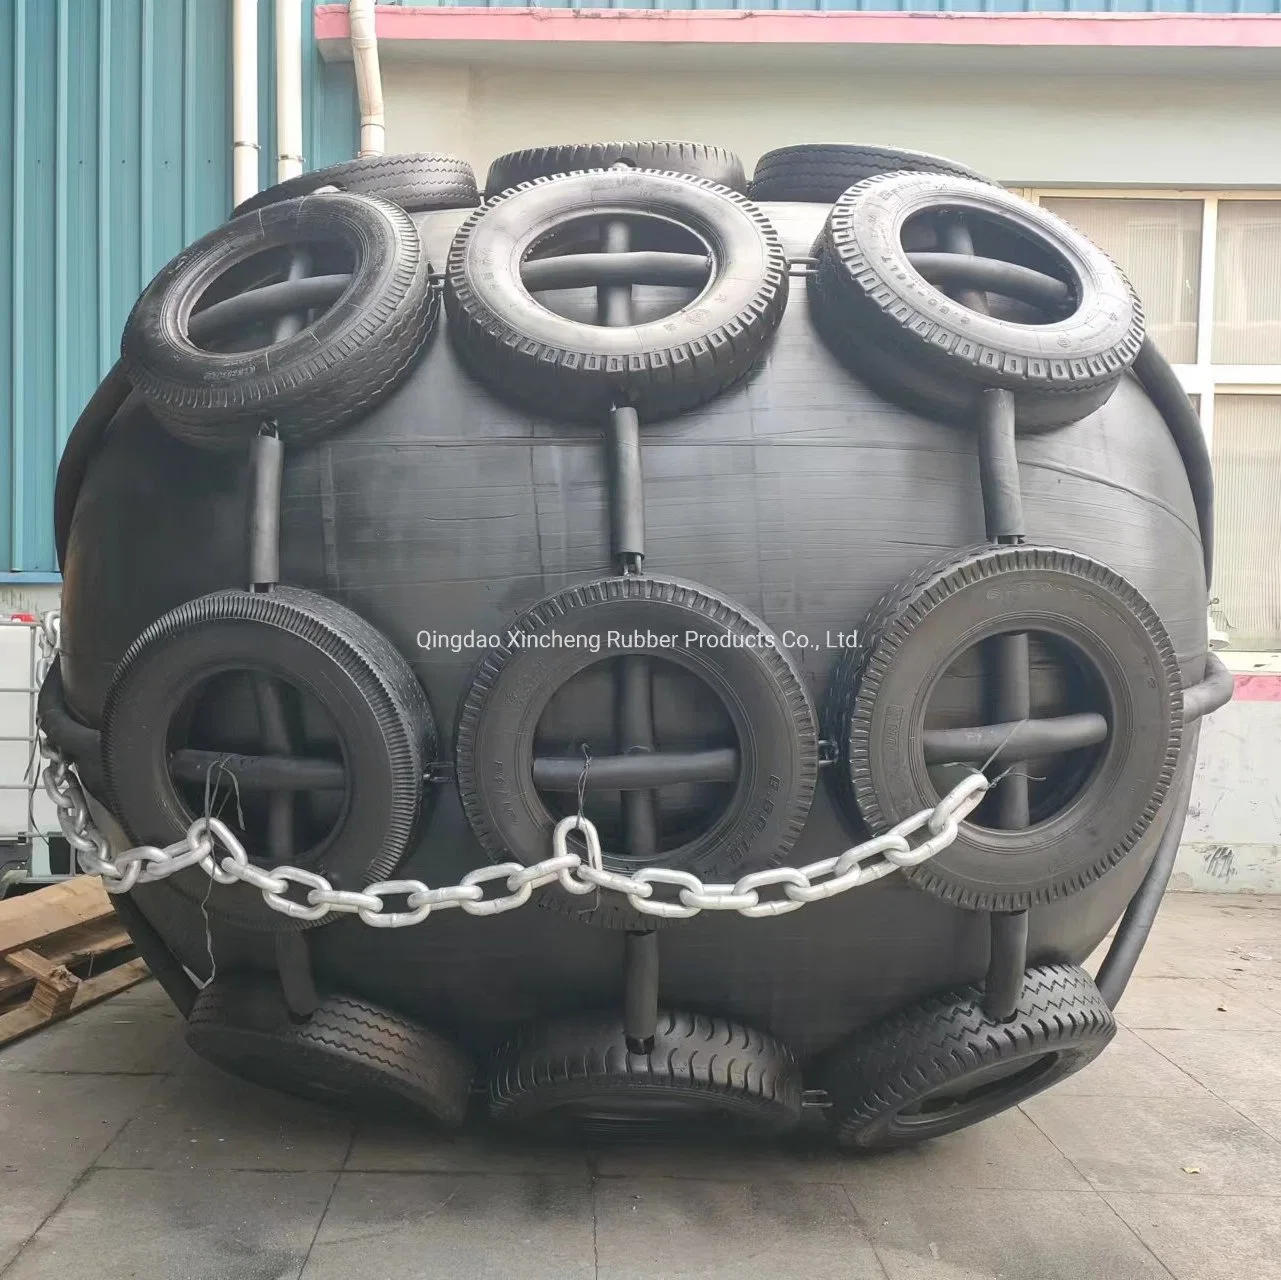 Qingdao Xincheng pneumatique ballon Marine l'aile en caoutchouc pour le bateau Dock